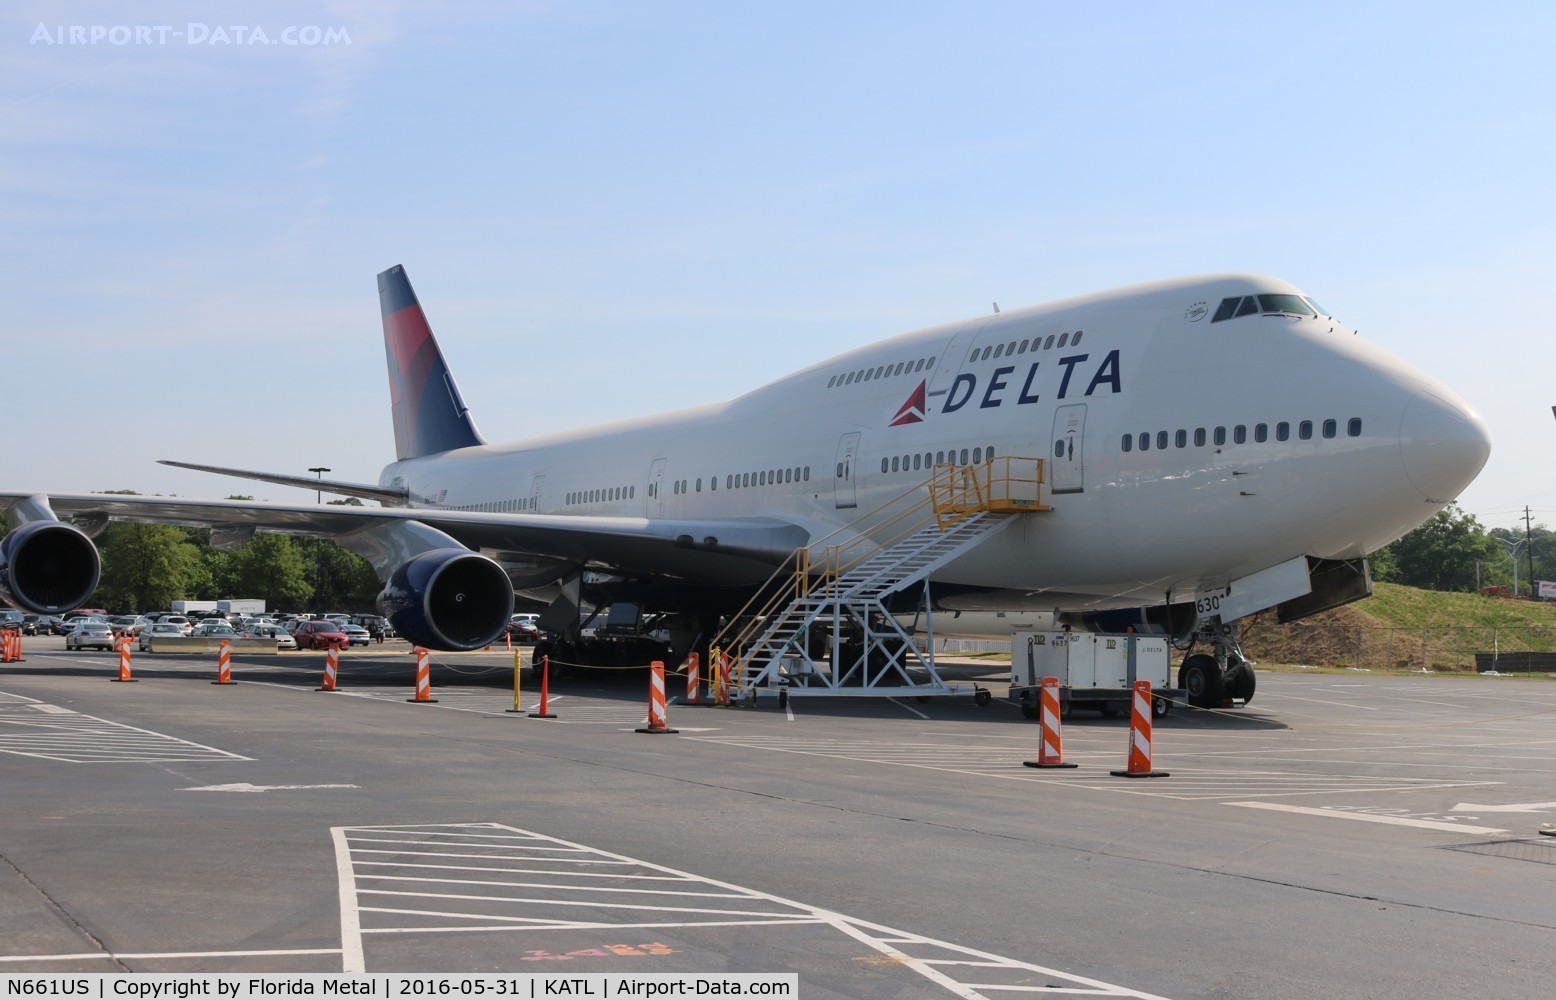 N661US, 1989 Boeing 747-451 C/N 23719, DAL 744 zx Delta ATL museum